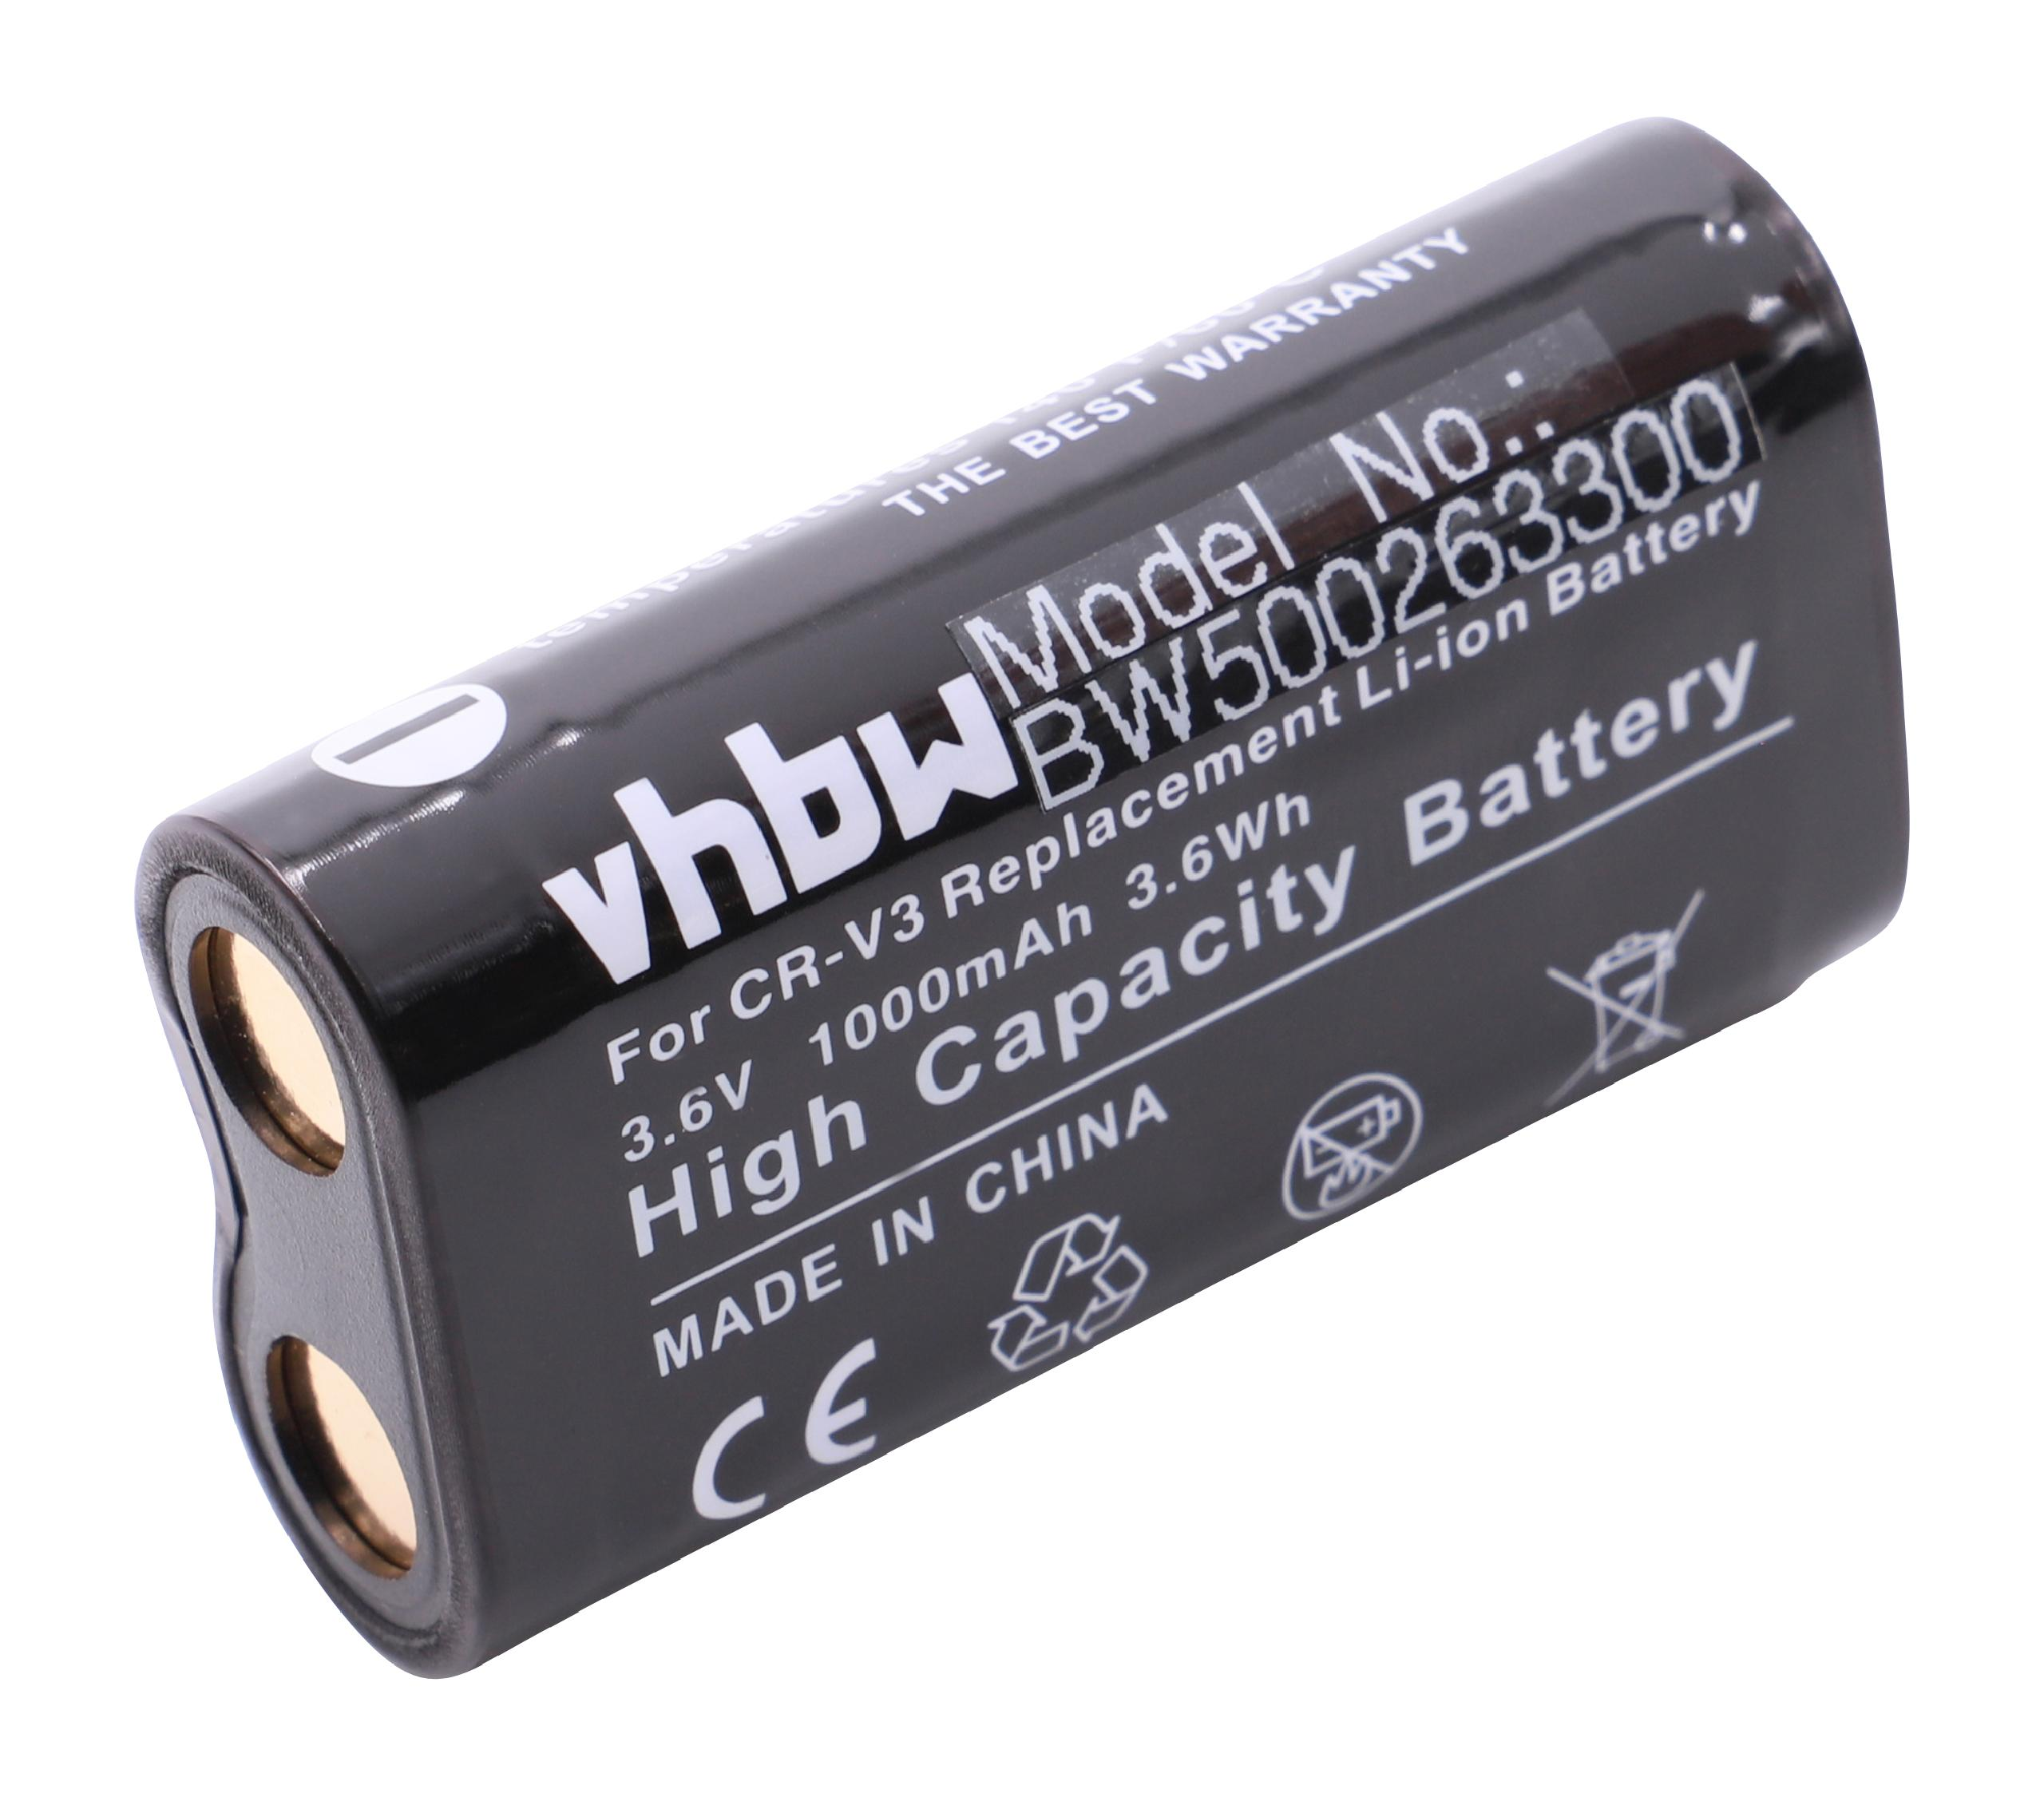 VHBW kompatibel mit Li-Ion GX-1s, - A7, A50, Volt, Kamera, A402, A55w, 1000 GX-1L, V70, A6 Samsung Akku A5, 3.6 V4, Digimax